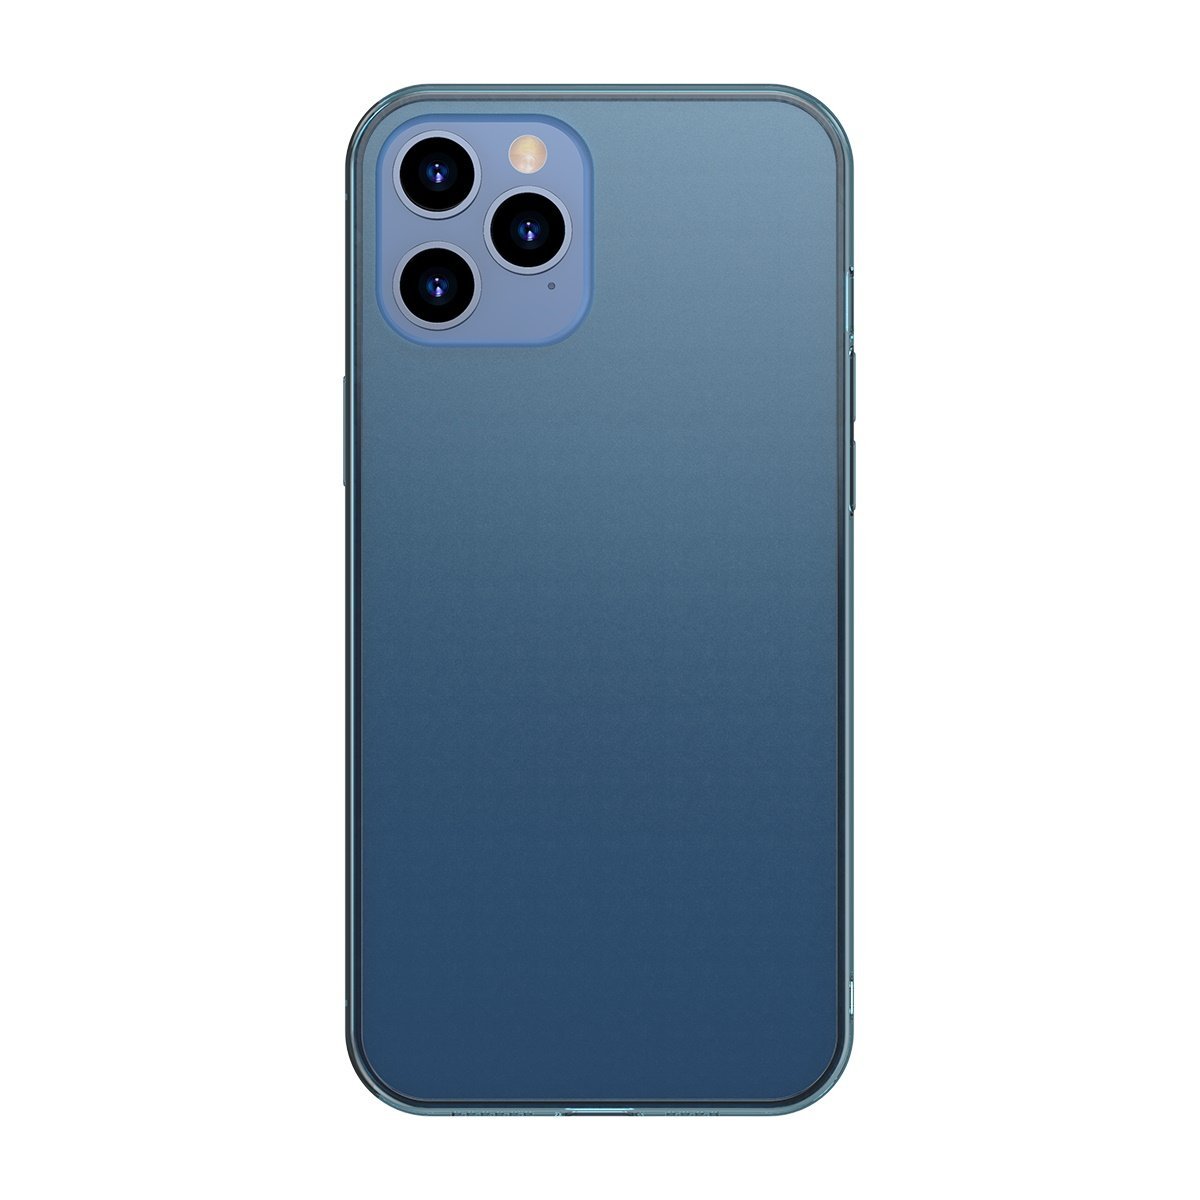 Husa pentru Apple iPhone 12 Pro Max, Baseus Protective Case, Albastru, 6.7 inch 6.7 imagine noua tecomm.ro